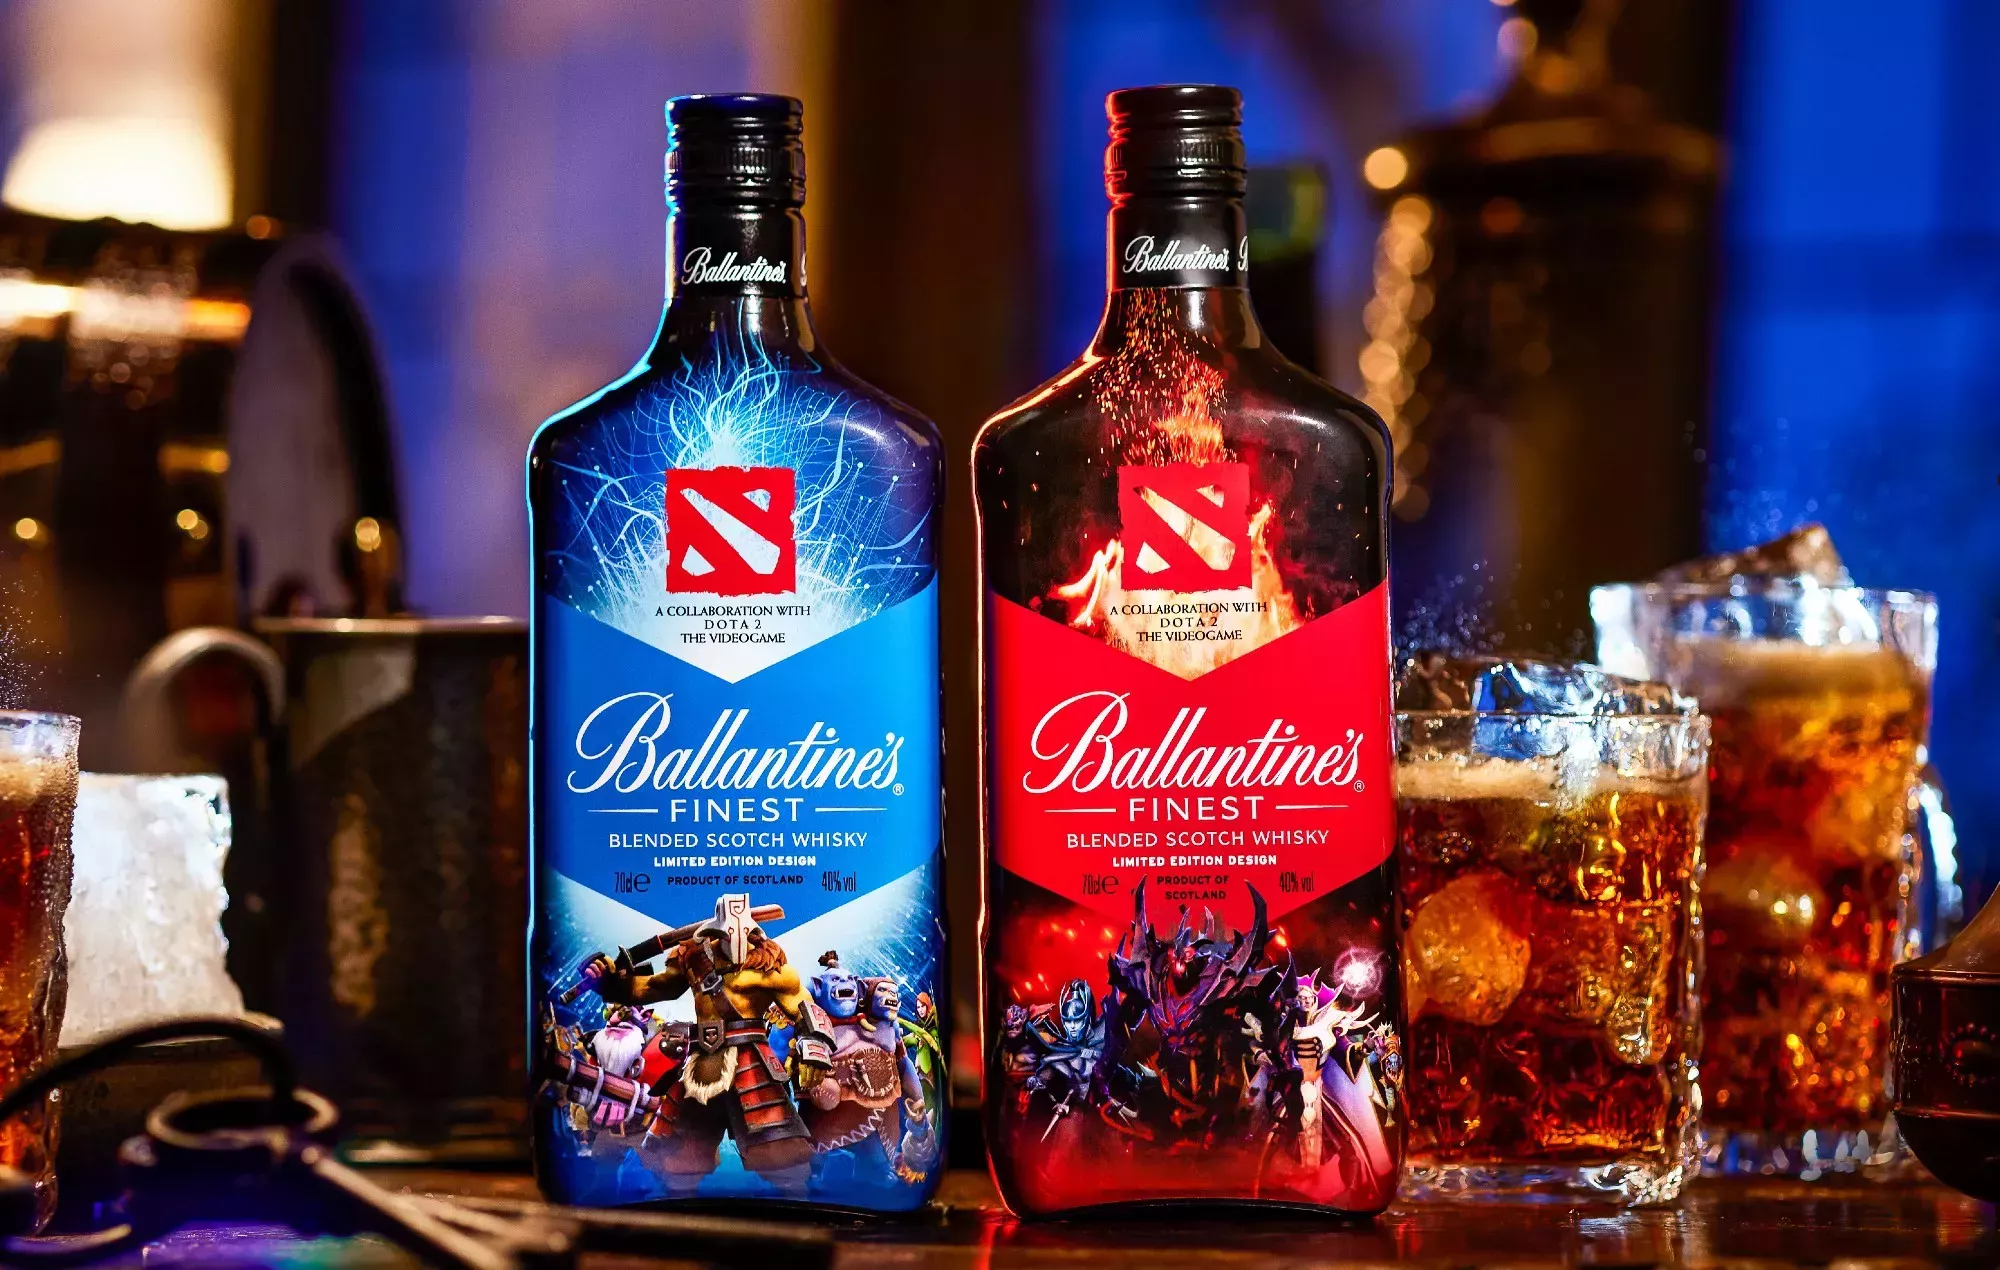 Dota 2 celebra su décimo aniversario con una edición limitada de whisky Ballantine's